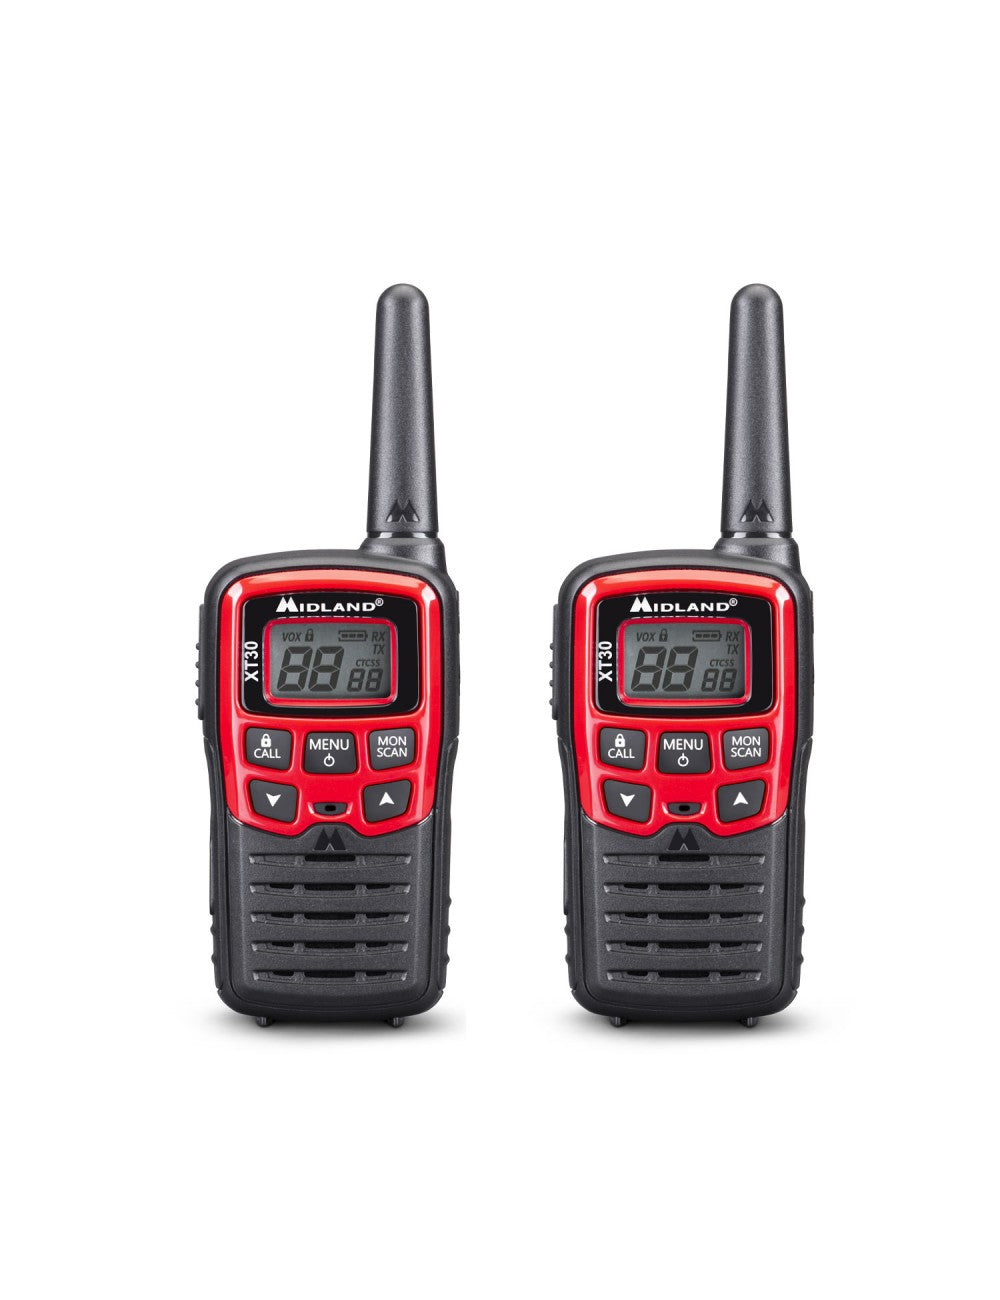 Radio dinamo ER300 con dos walkies y cuatro mantas de emergencia